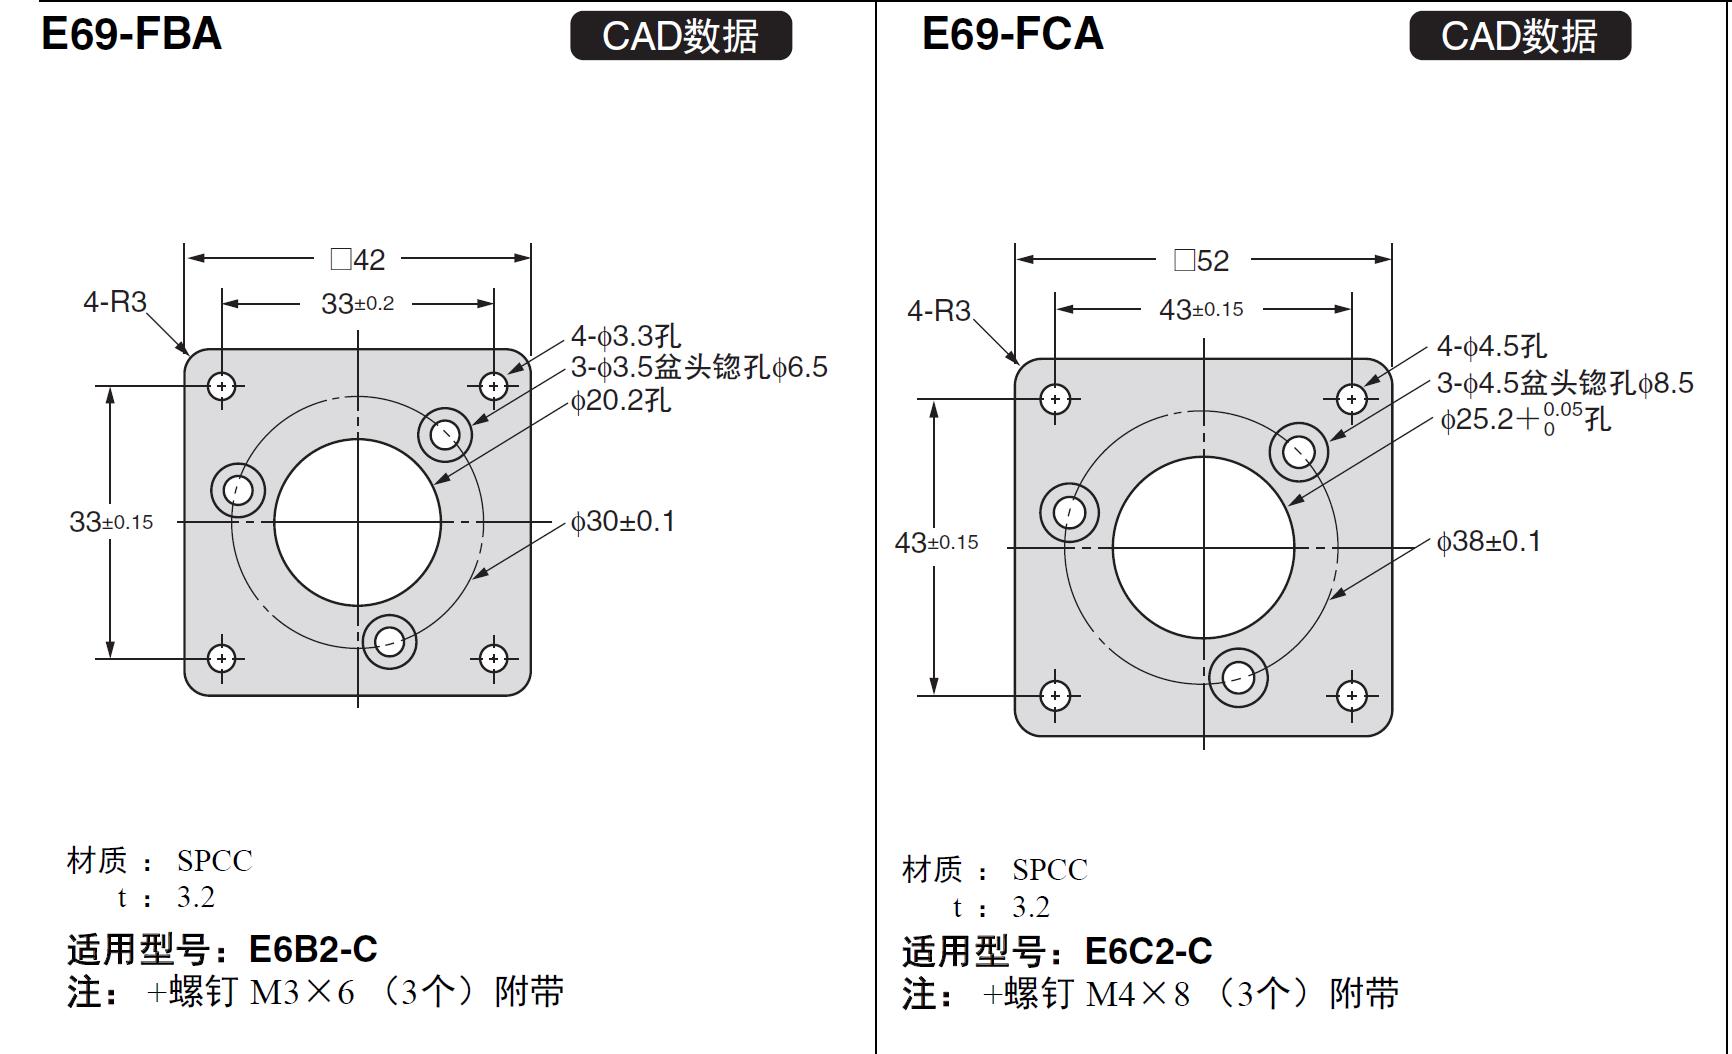 加热器用断线、SSR故障检测功能：单相加热器用检测功能
欧姆龙E69-FCA03